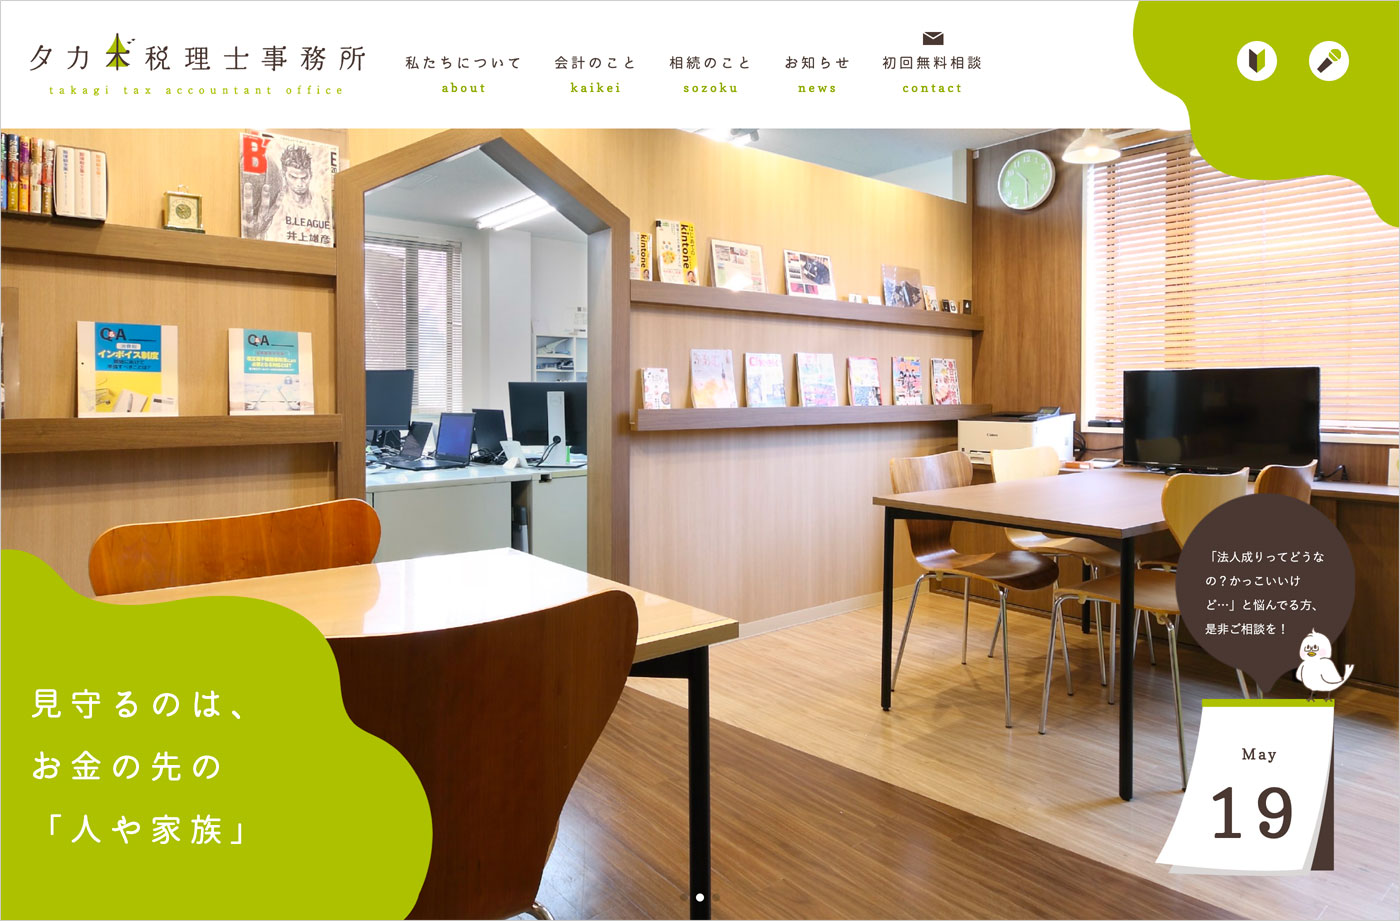 タカギ税理士事務所 | 愛知県小牧市税務・相続・開業のことならウェブサイトの画面キャプチャ画像